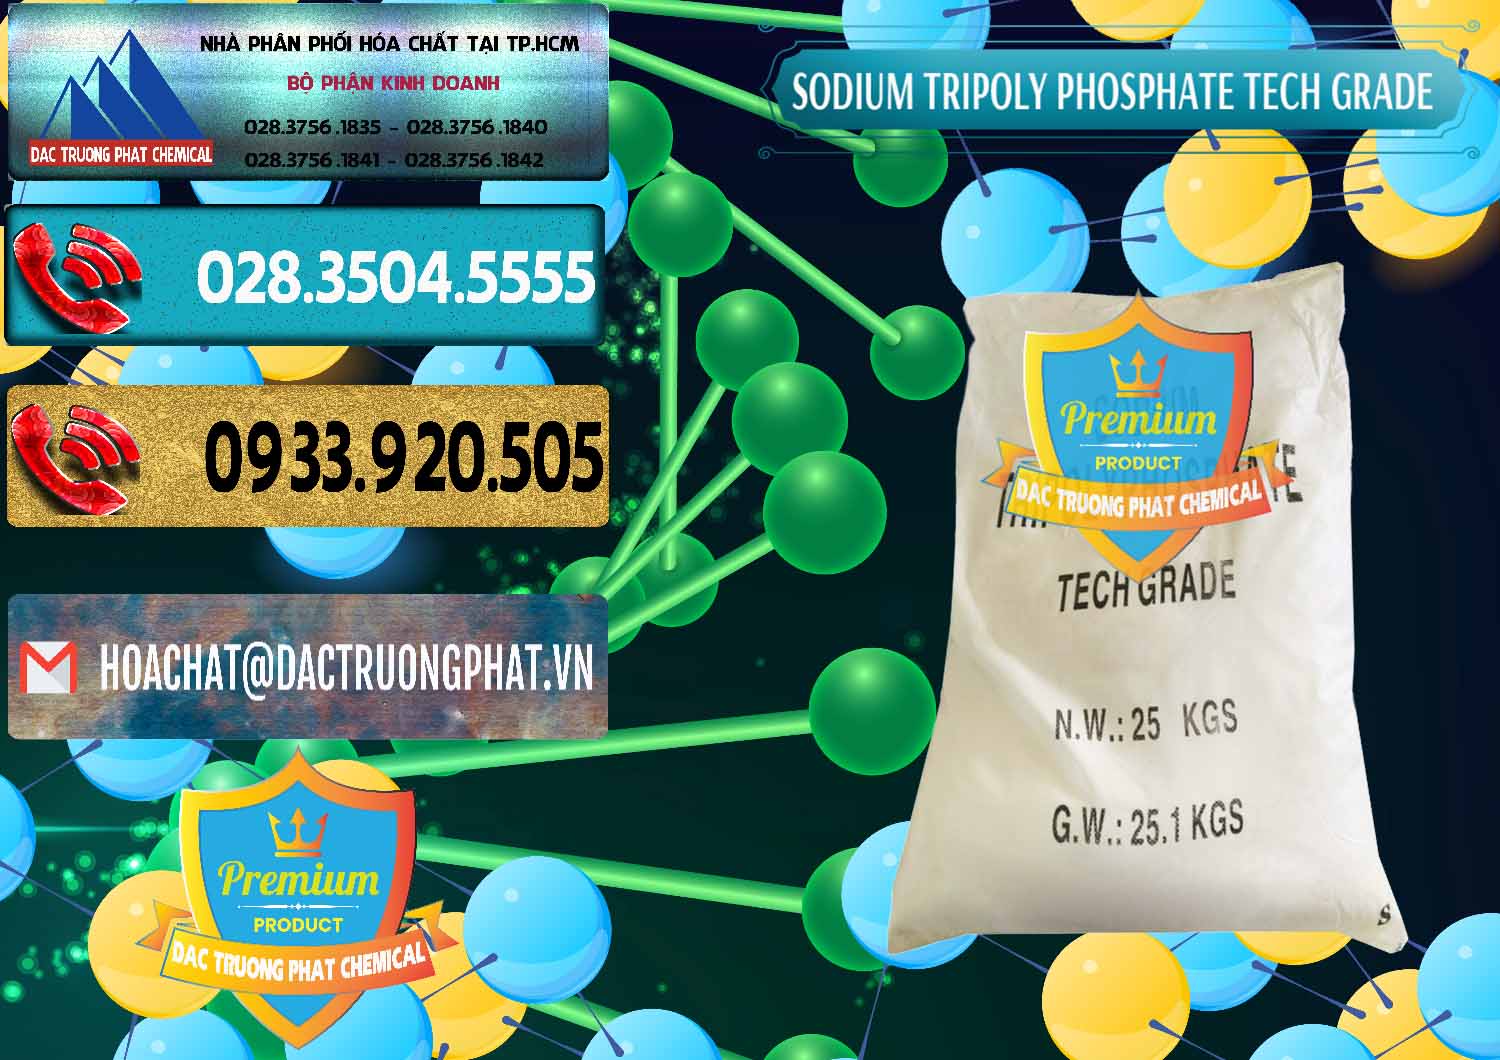 Công ty cung ứng - bán Sodium Tripoly Phosphate - STPP Tech Grade Trung Quốc China - 0453 - Đơn vị chuyên nhập khẩu _ phân phối hóa chất tại TP.HCM - hoachatdetnhuom.com